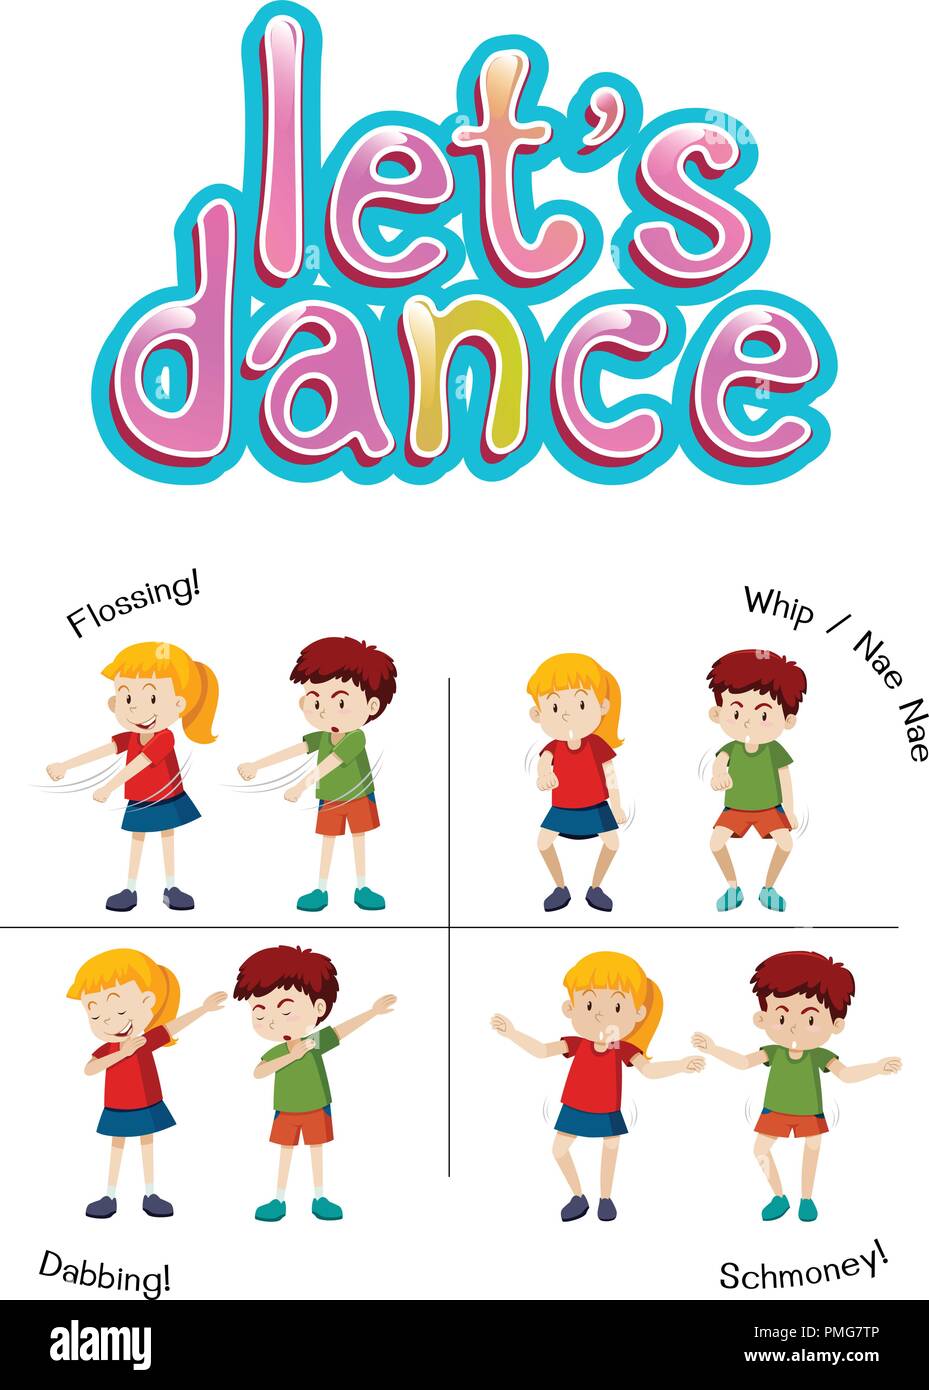 Kinder mit unterschiedlichen Tanz bewegen Abbildung Stock Vektor